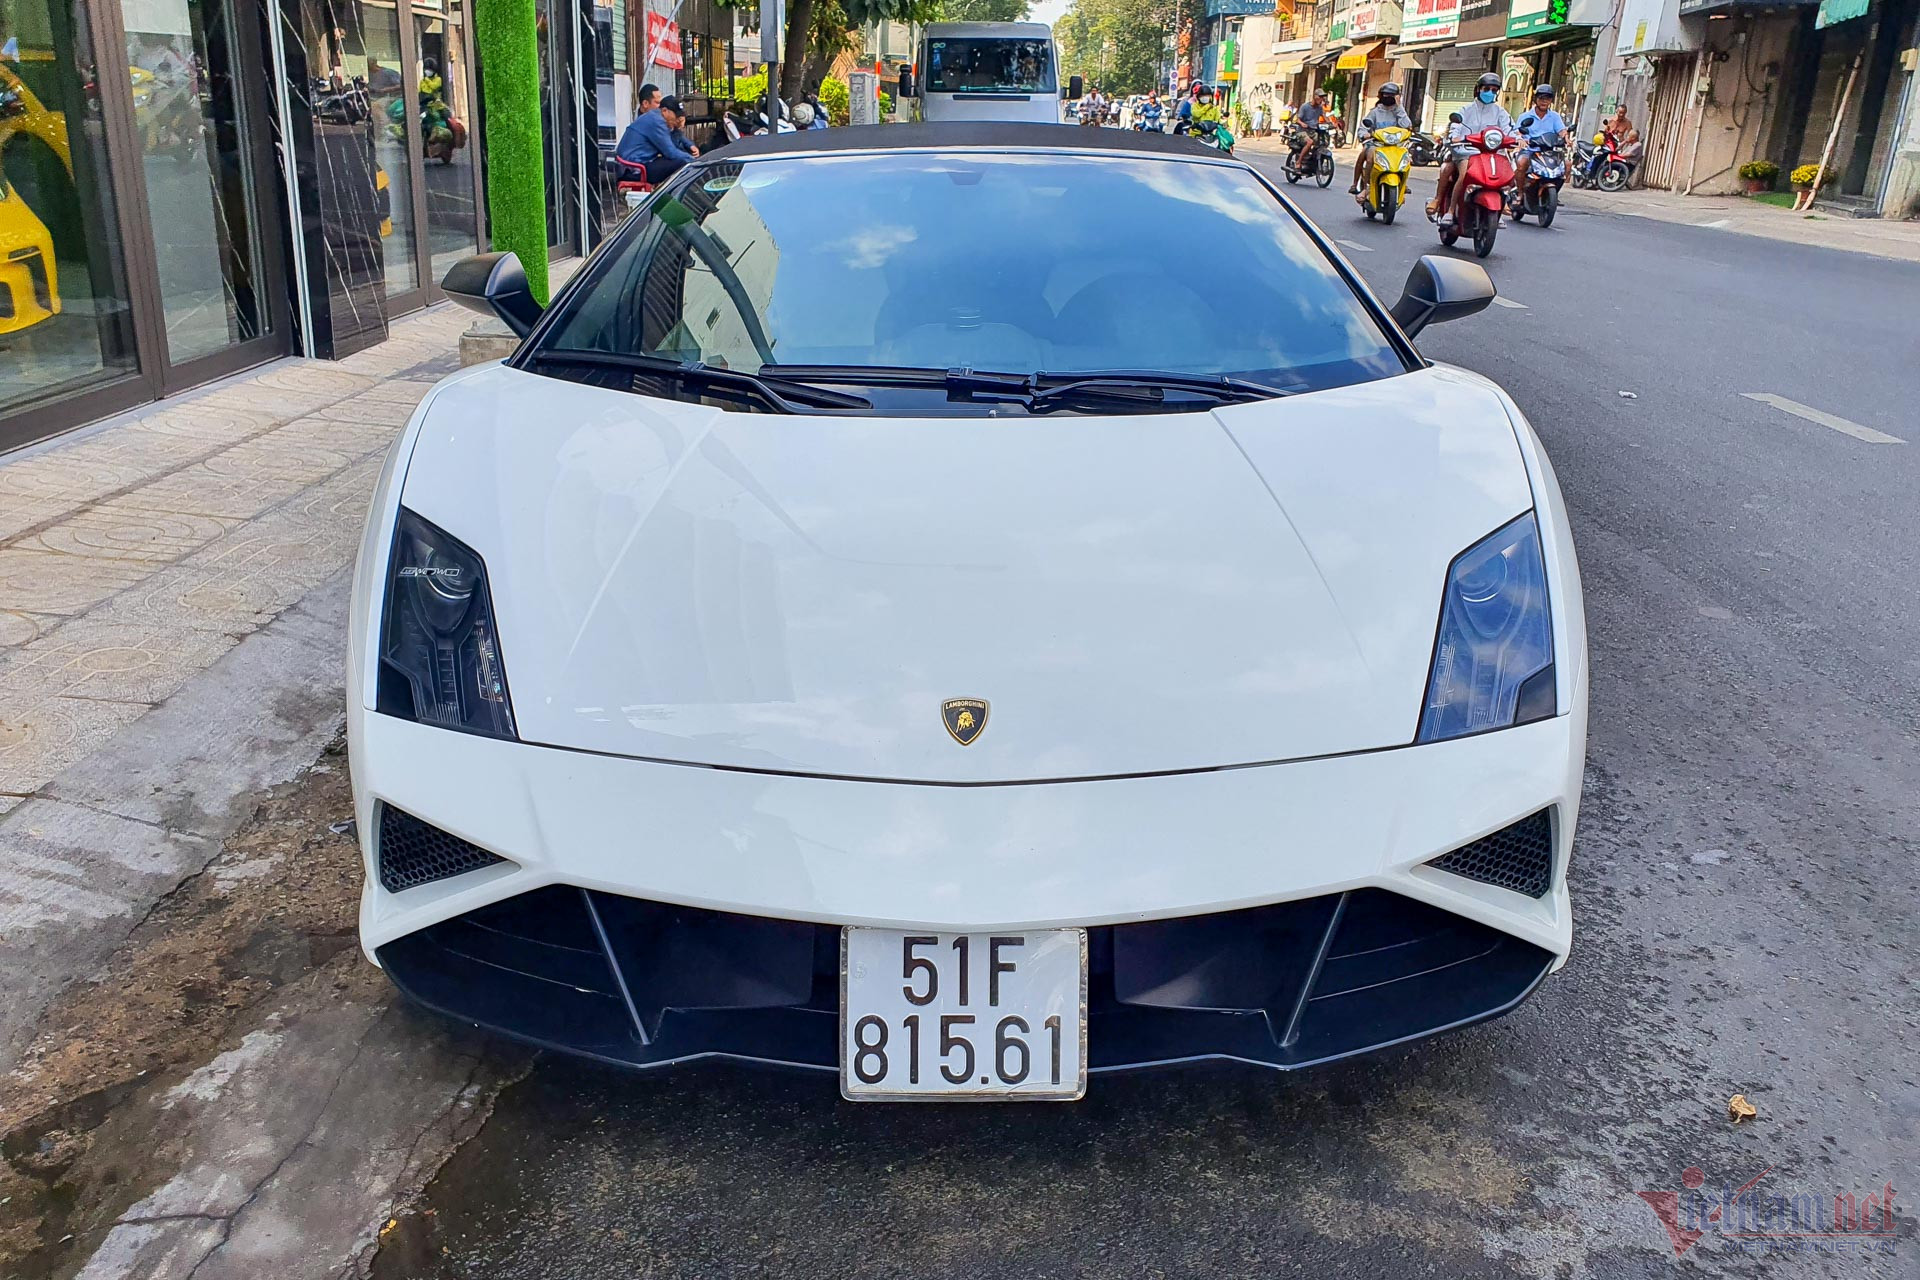 View - Siêu xe Lamborghini Gallardo mui trần của ông Đặng Lê Nguyên Vũ tái xuất